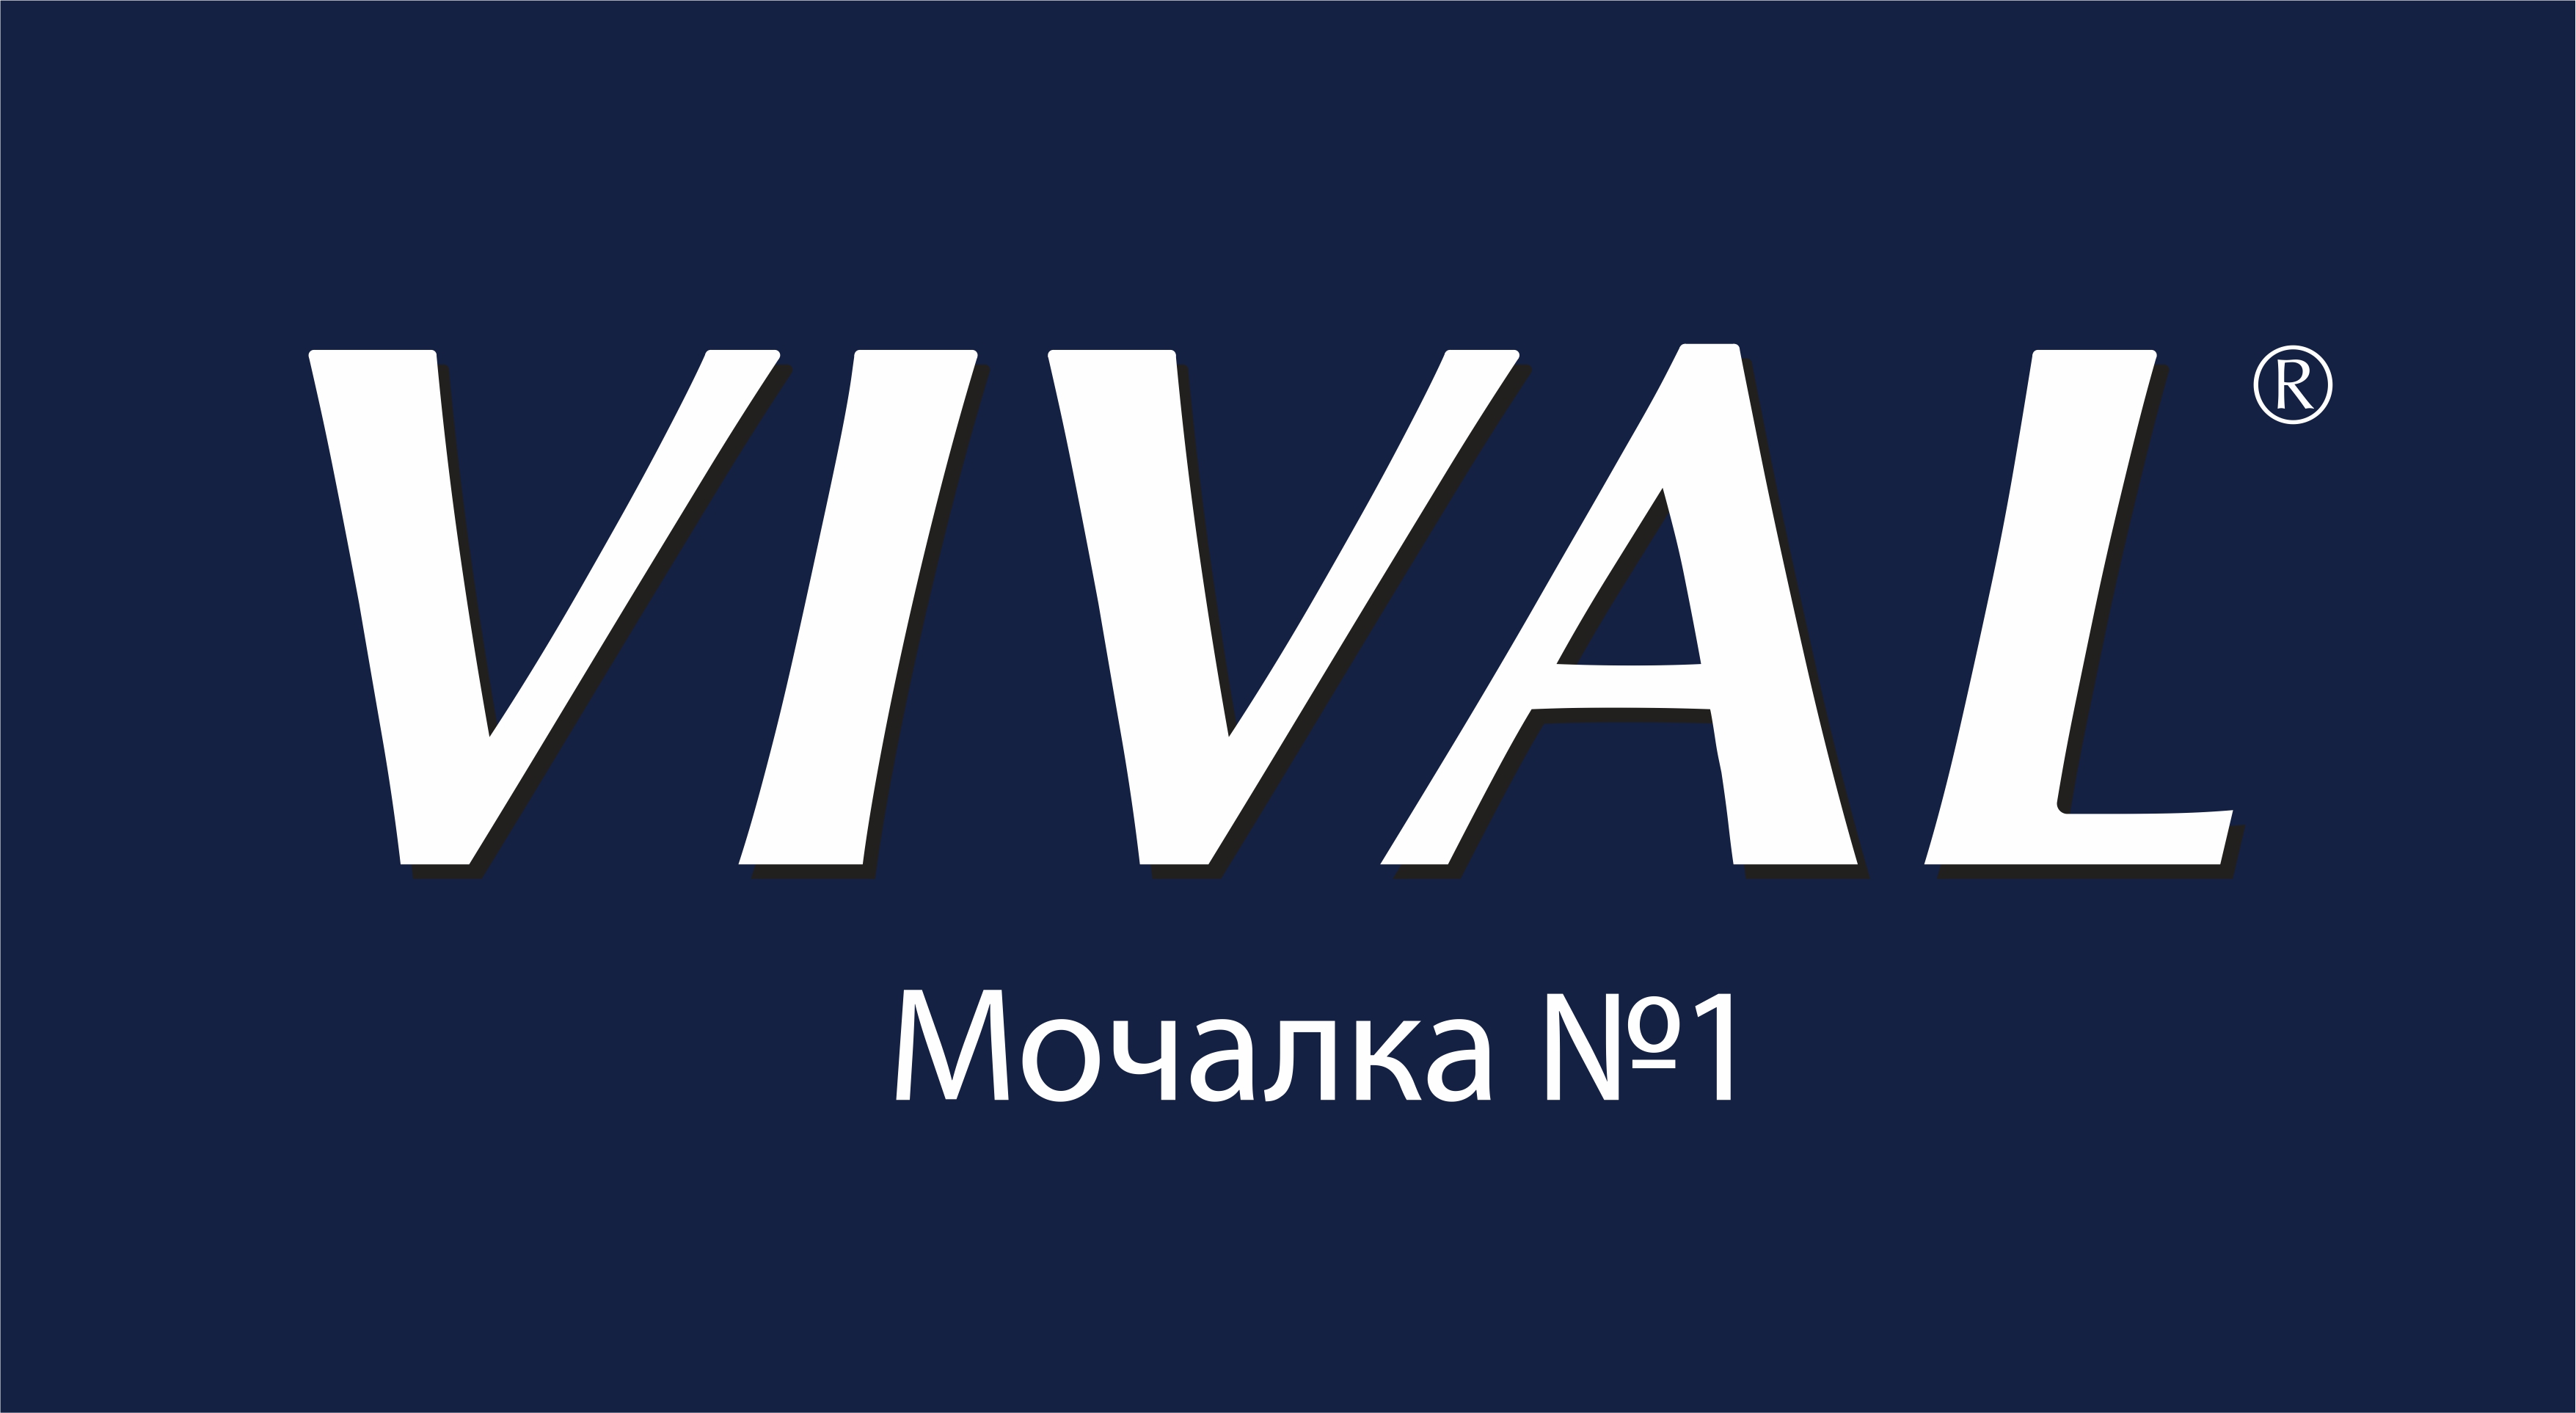 Bank Vival